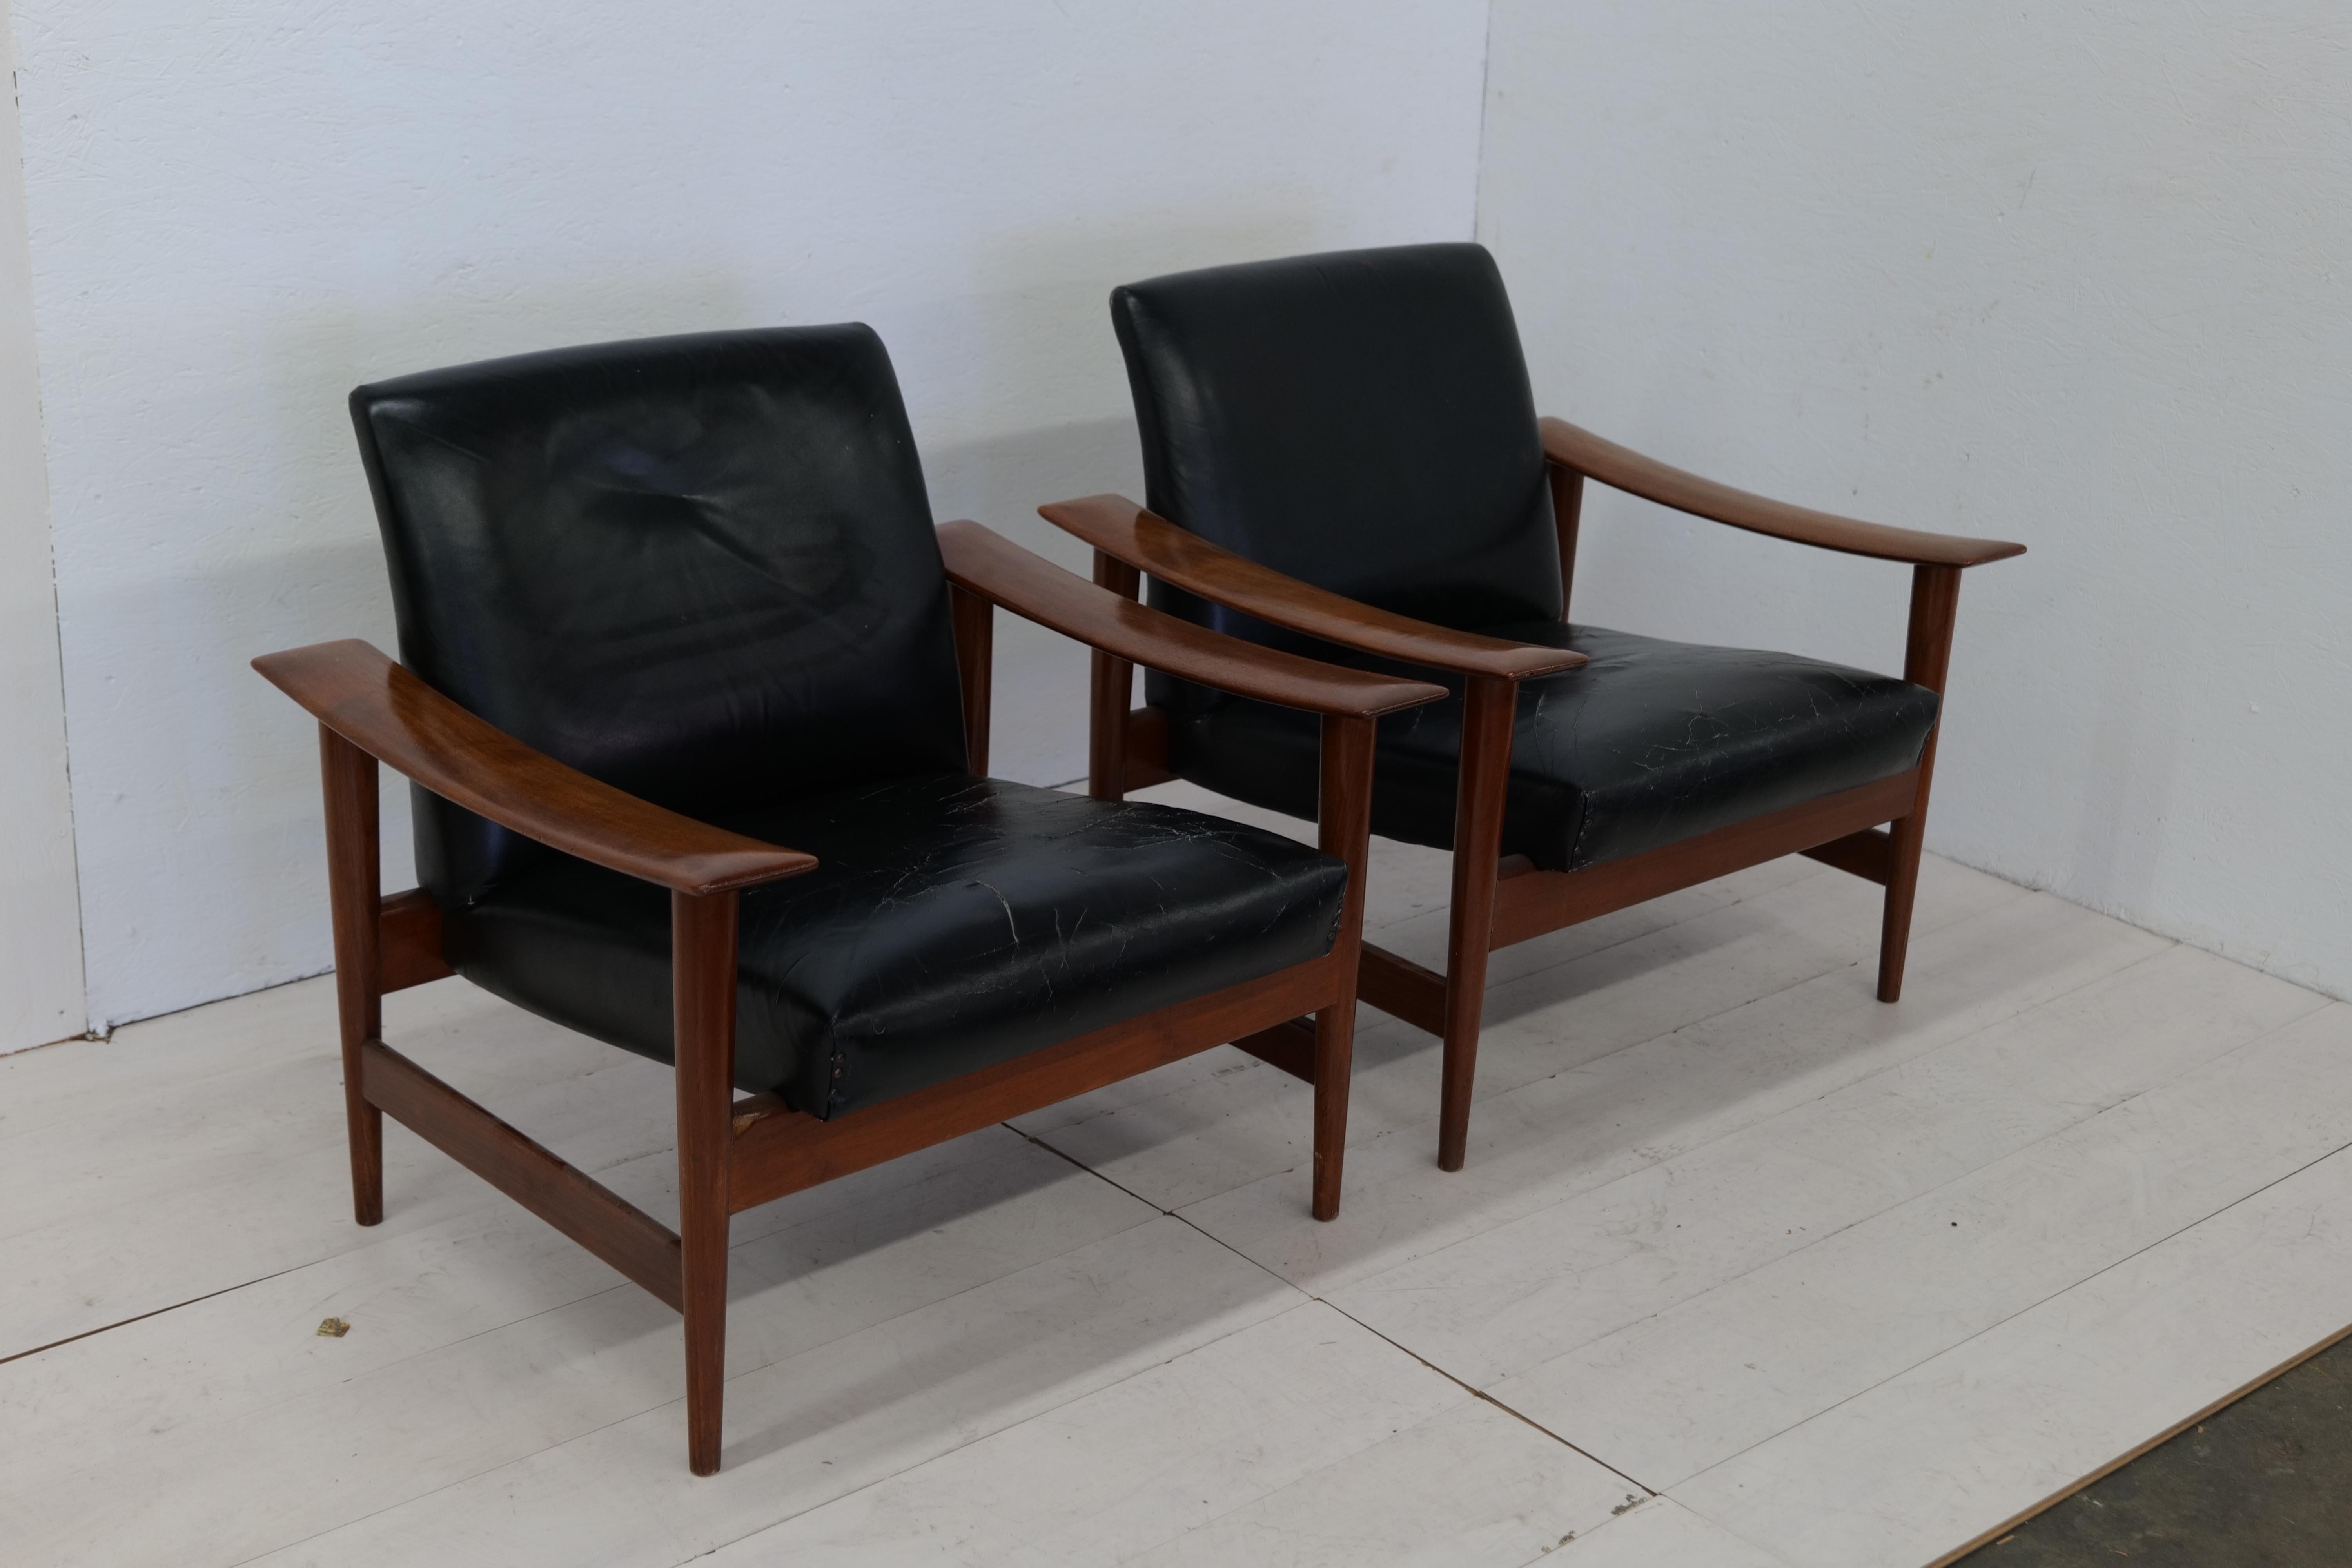 Der dänische Sessel aus der Mitte des Jahrhunderts, der in den 1960er Jahren hergestellt wurde, verbindet die Wärme von Nussbaum mit der Raffinesse von Leder. Sein schlankes Design und seine klaren Linien sind Ausdruck des ikonischen dänischen